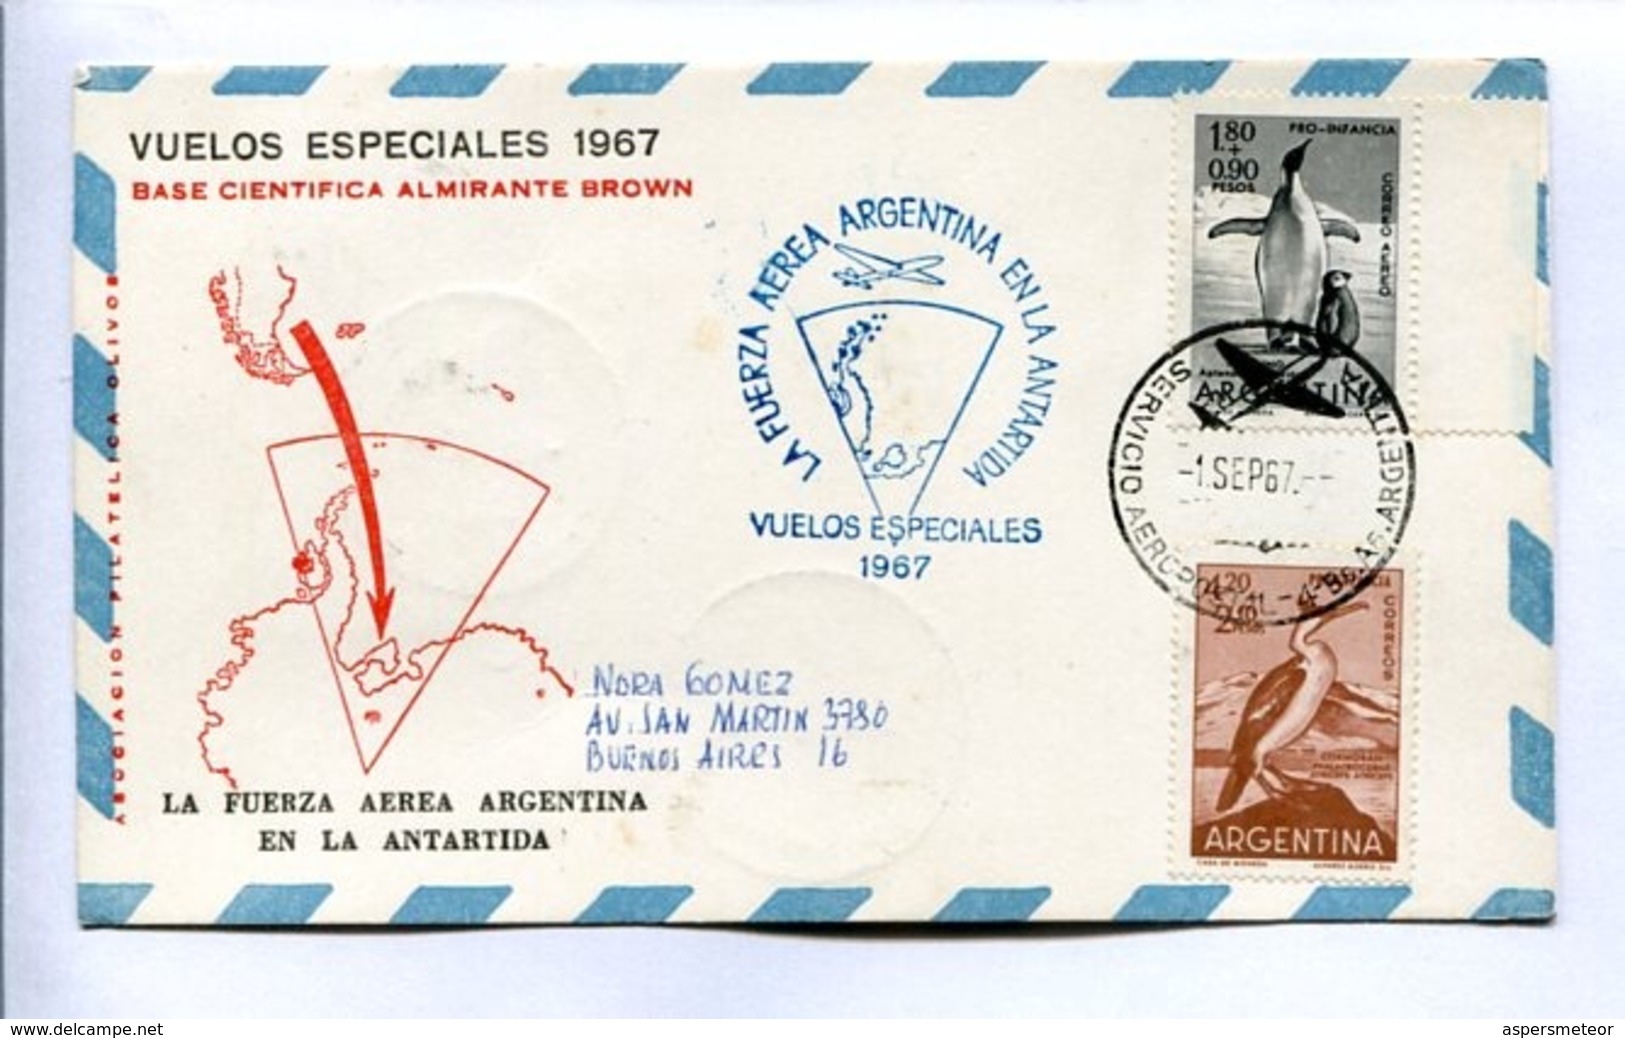 VUELOS ESPECIALES 1967 - BASE CIENTÍFICA ALMIRANTE BROWN. FUERZA AEREA ARGENTINA EN LA ANTÁRTIDA. CARTE PAR AVION -LILHU - Polar Flights